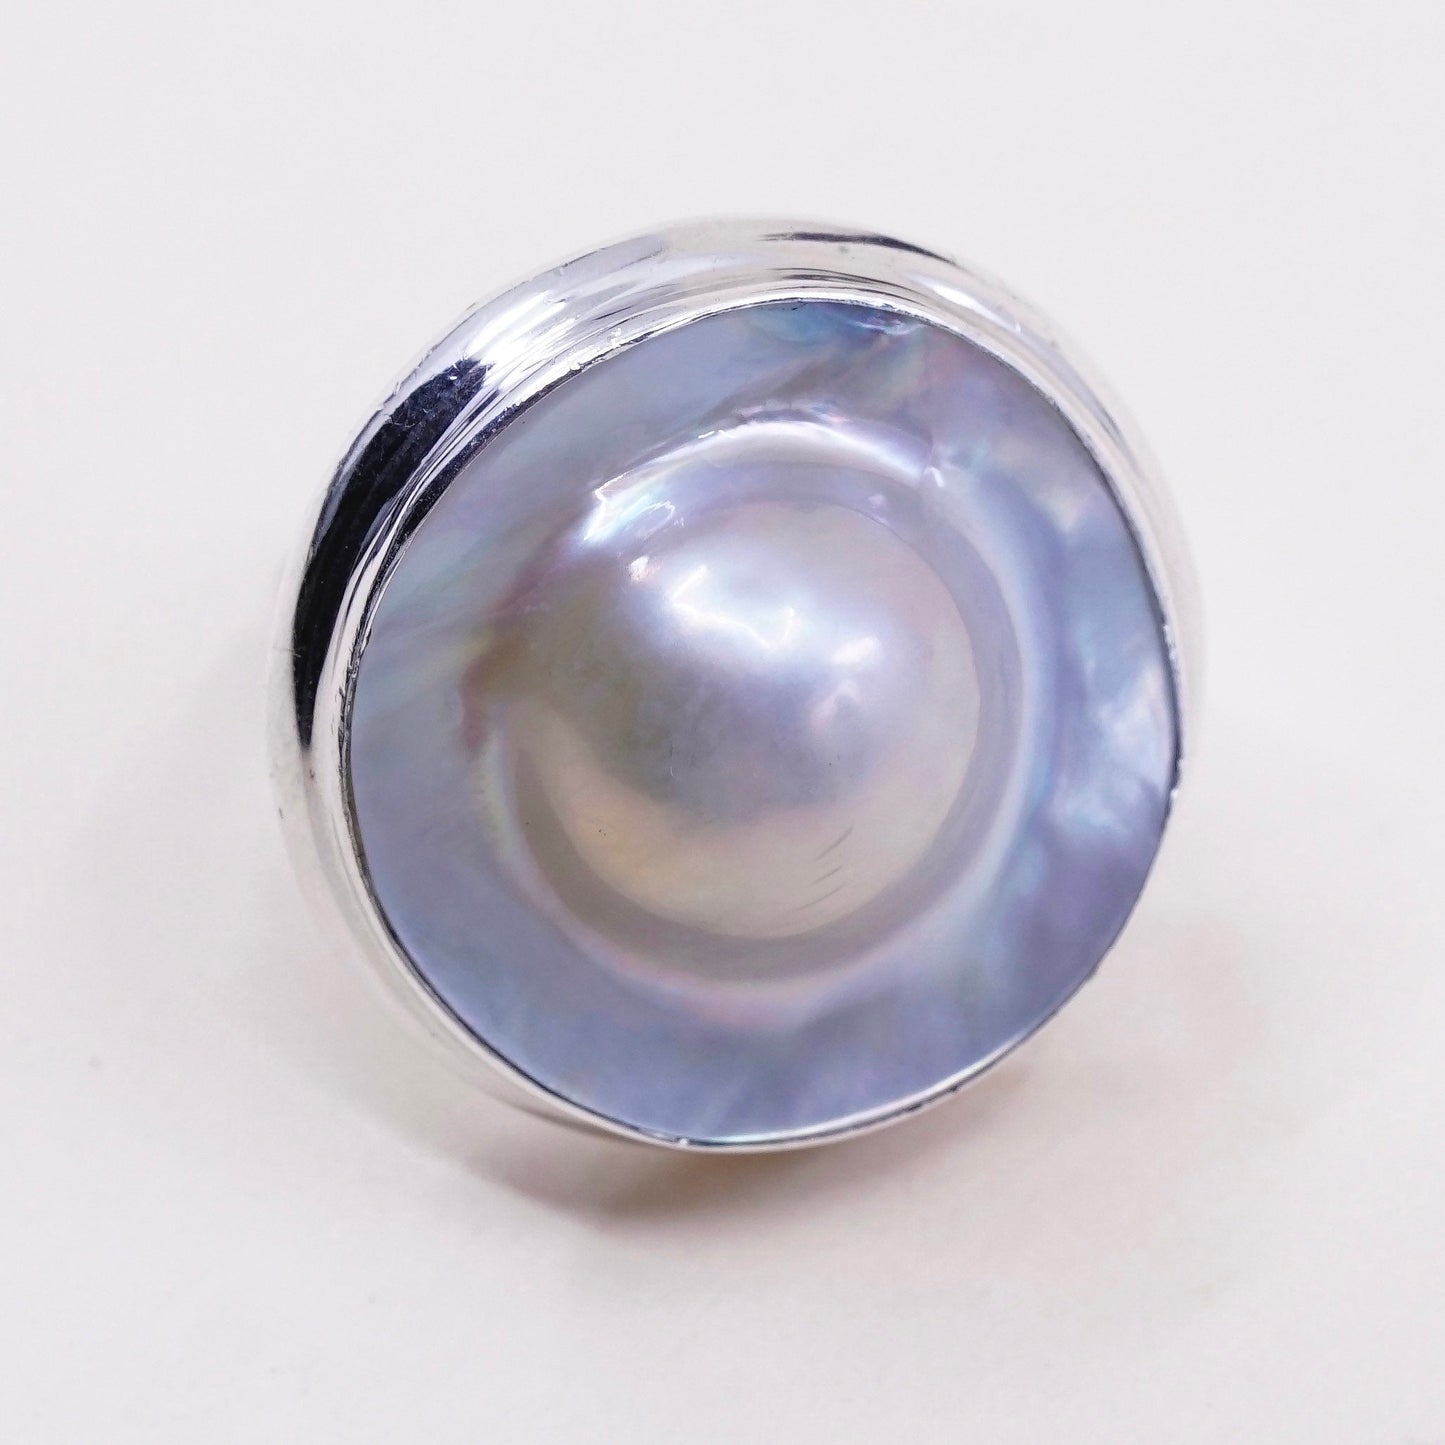 sz 7, vtg SLJ Sterling silver handmade ring, modern 925 band w/ bluster pearl